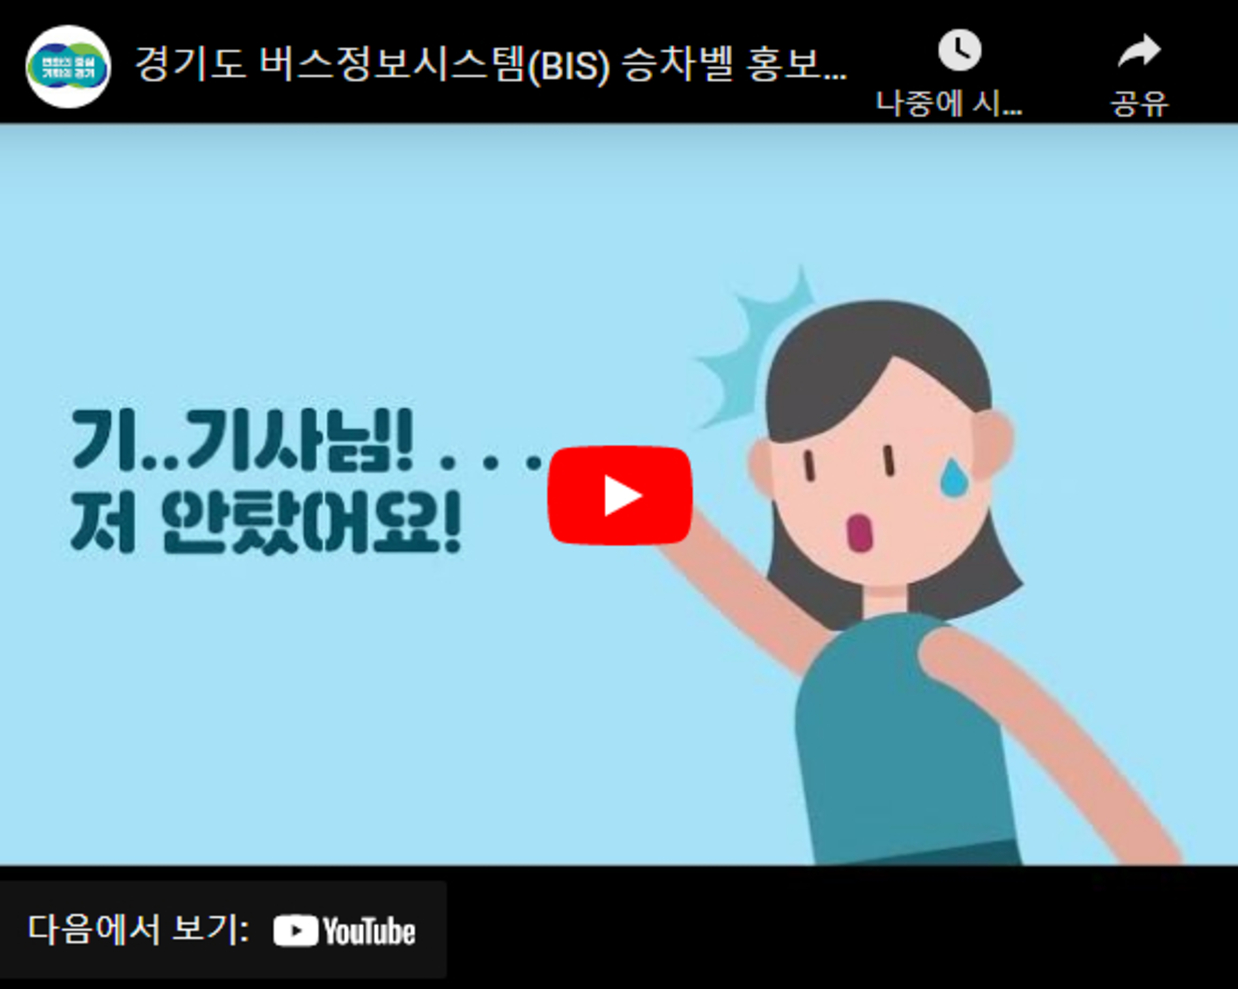 경기도 버스정보시스템(BIS) 승차벨 홍보 영상, youtube로 새창 열림